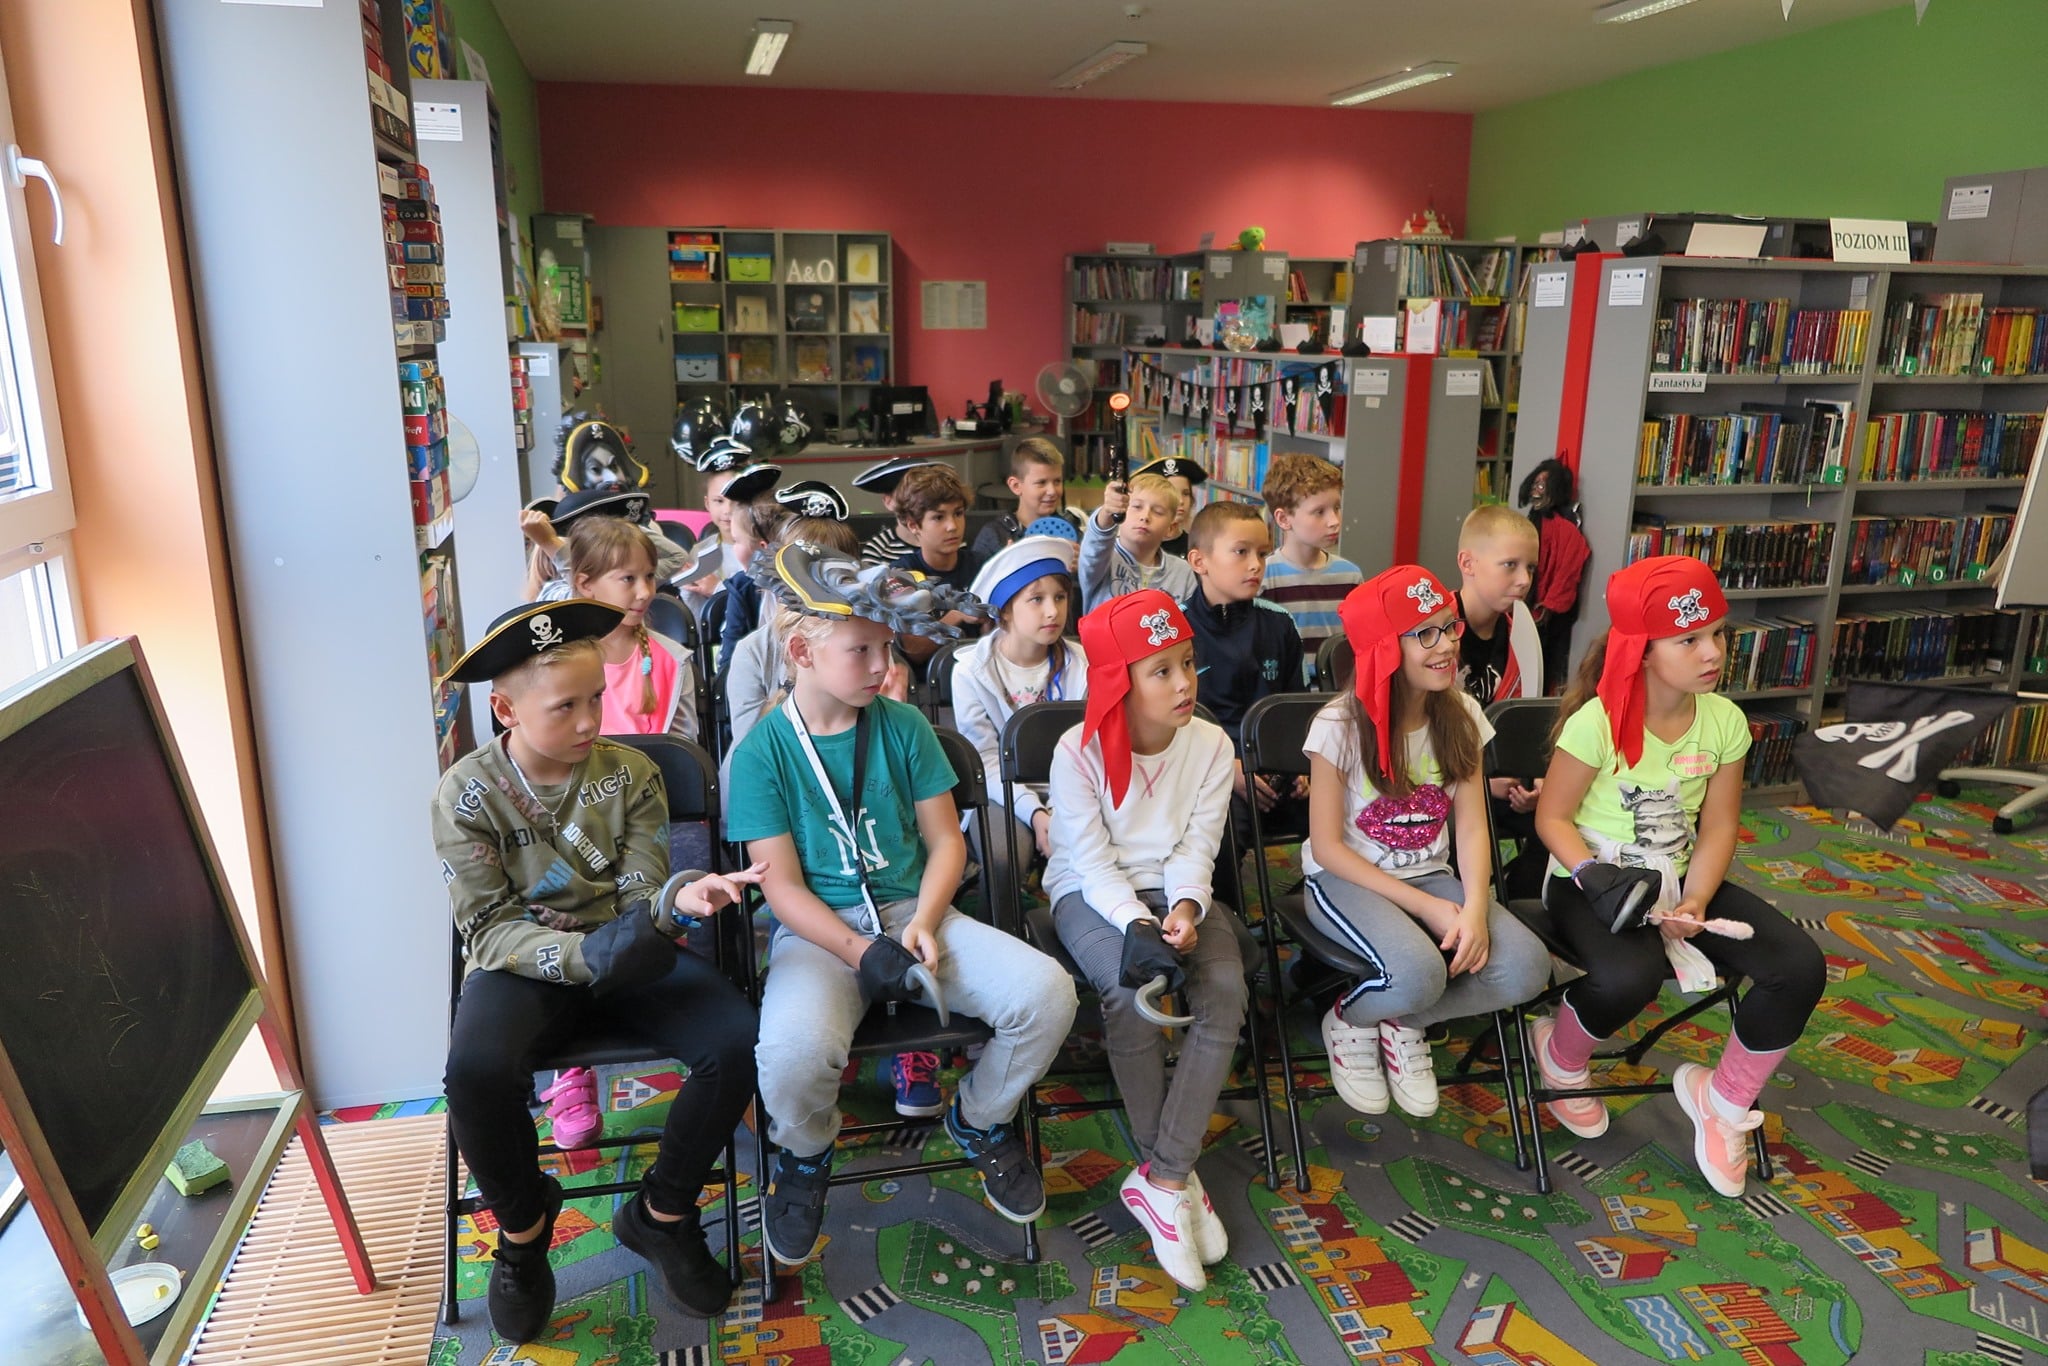 Wnętrze biblioteki, grupa dzieci siedzi na krzesełkach w pirackich strojach.